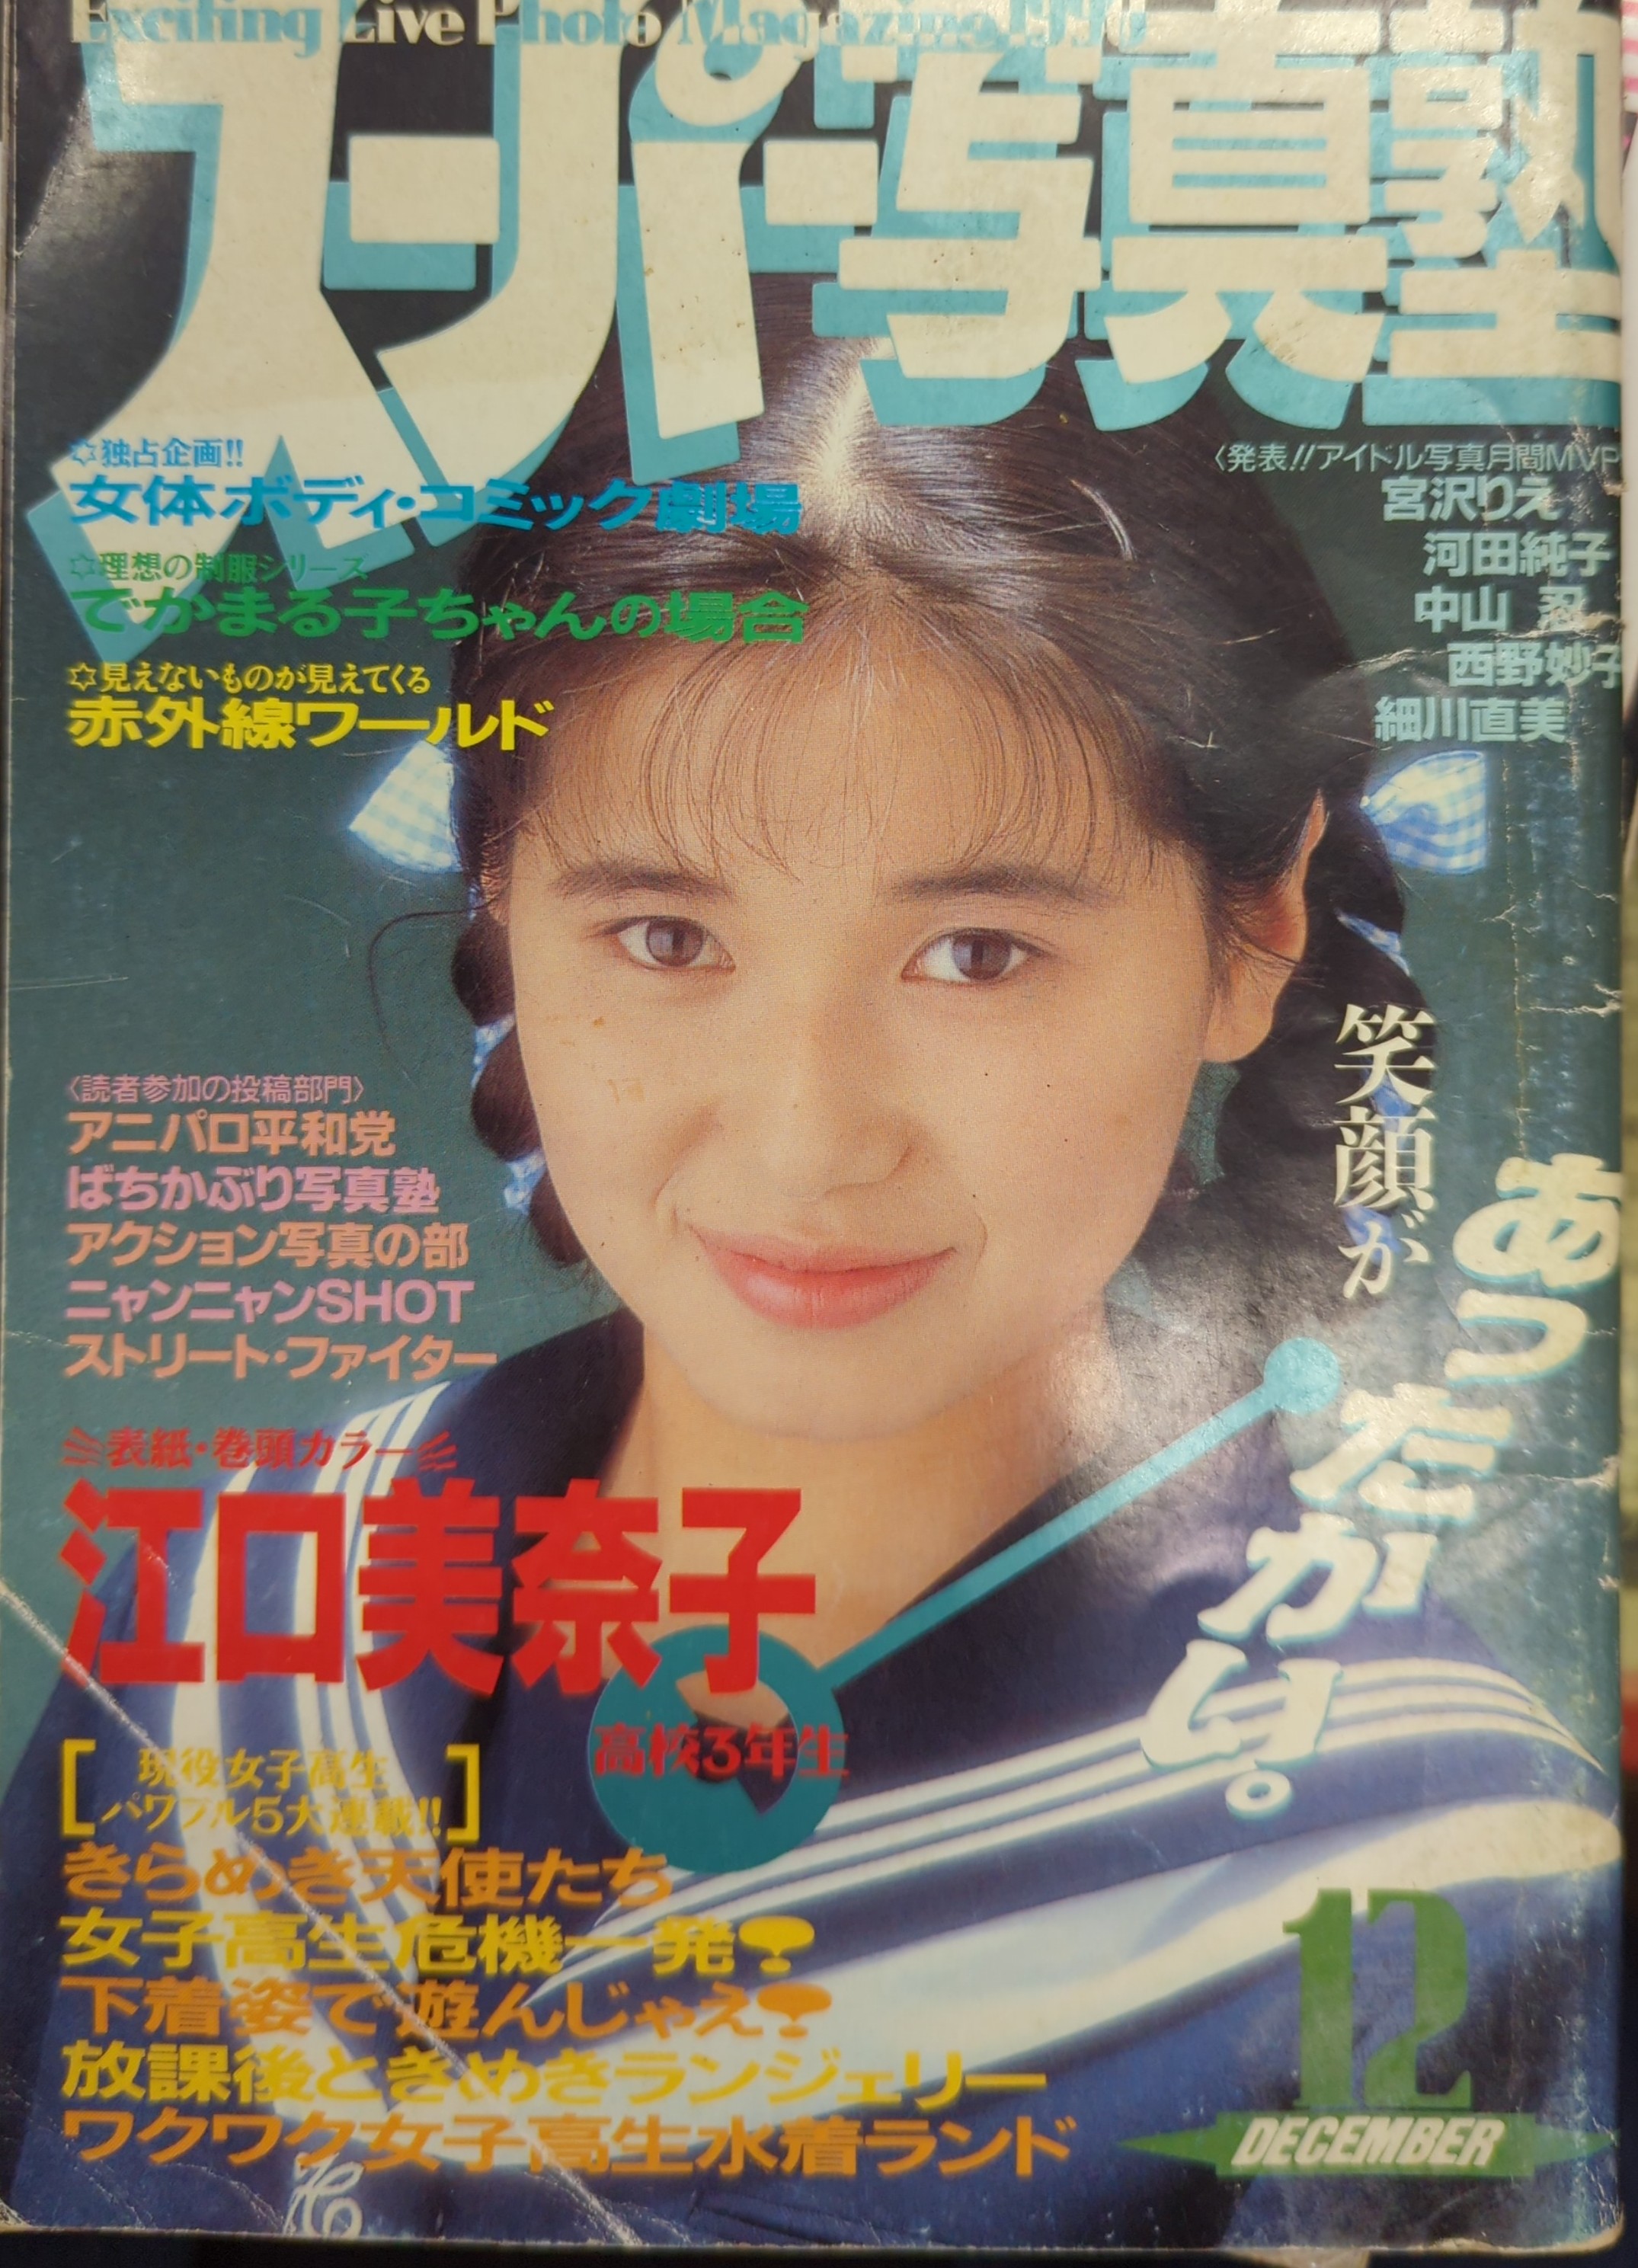 スーパー写真塾 1994年6月【匿名発送】 - 雑誌